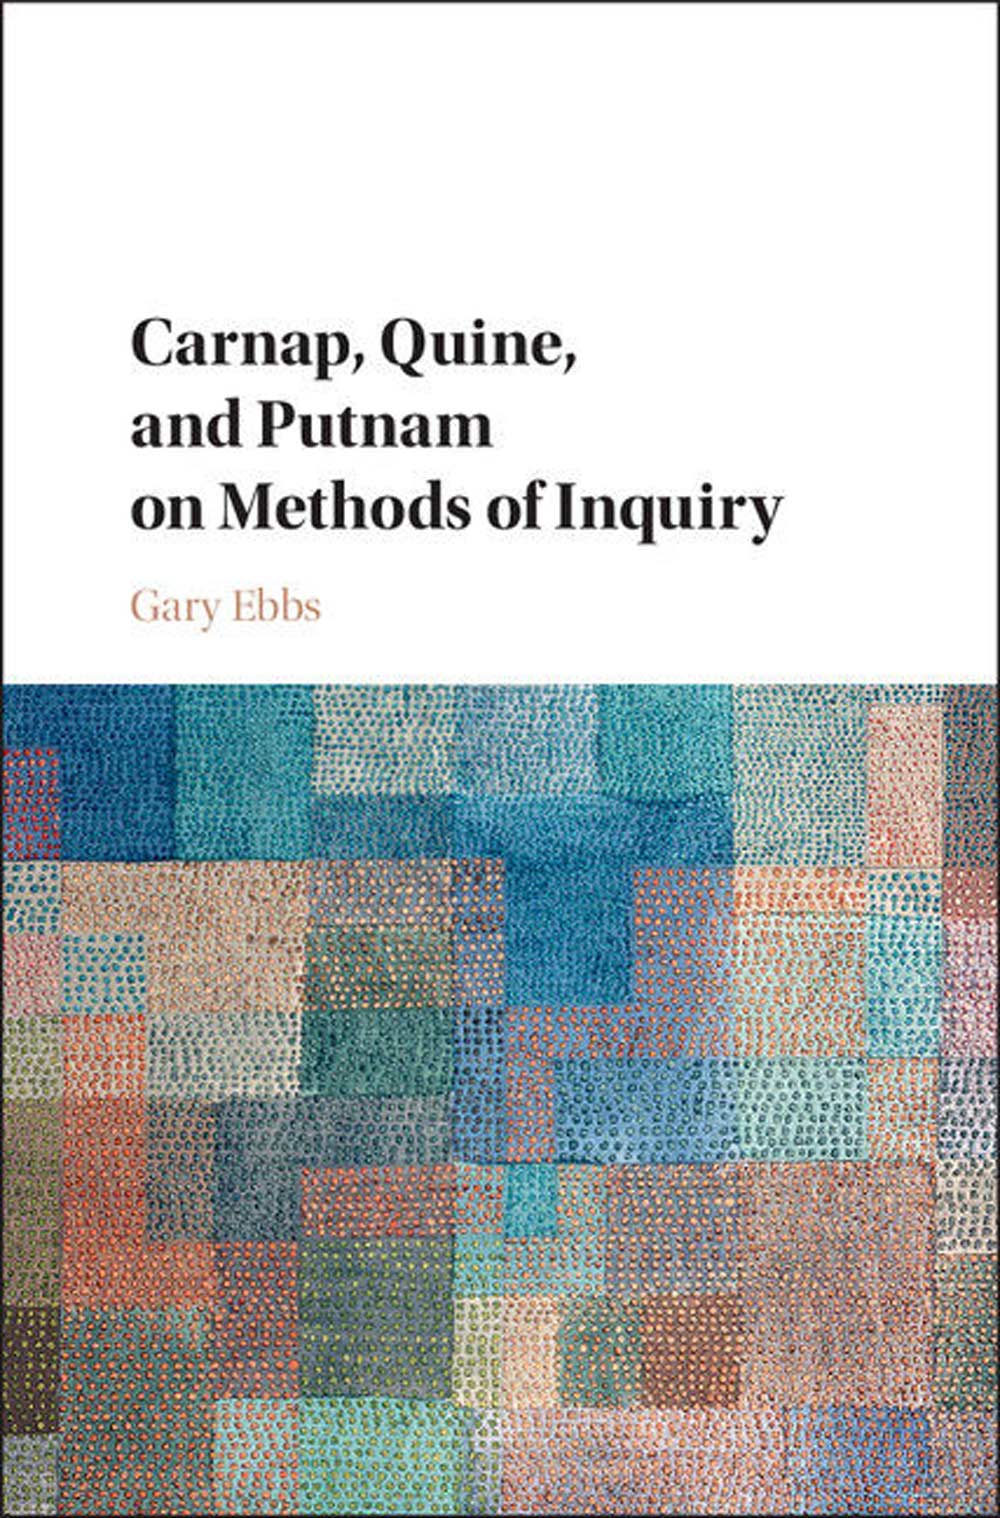 Carnap, Quine, and Putnam on Methods of Inquiry